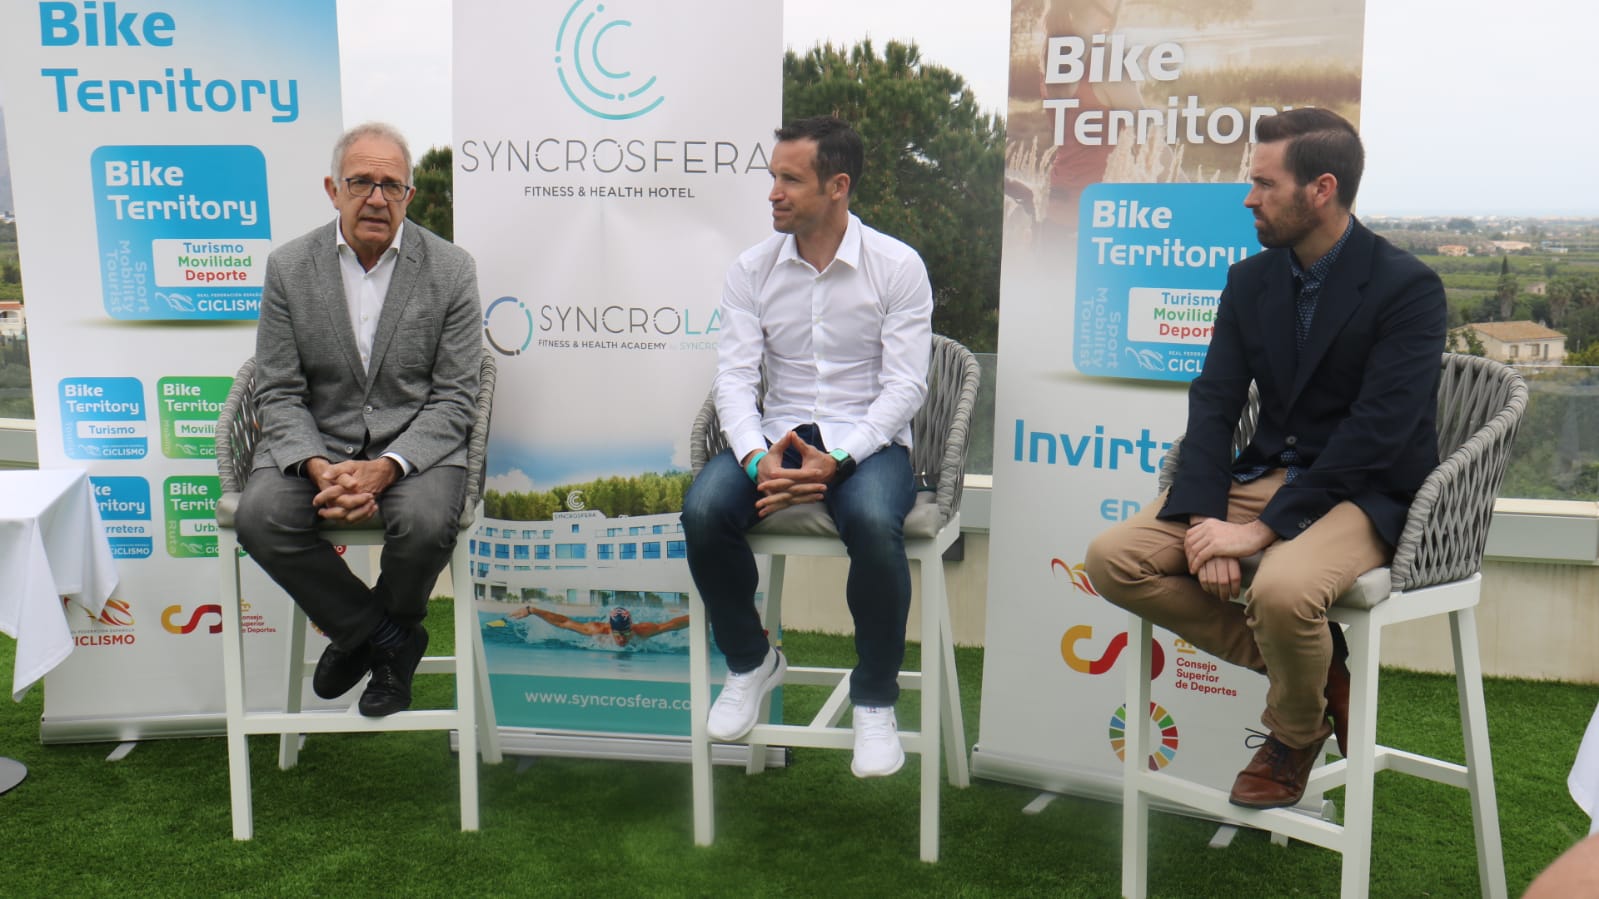 El Hotel Syncrosfera obtiene el sello de Bike Territory Turismo